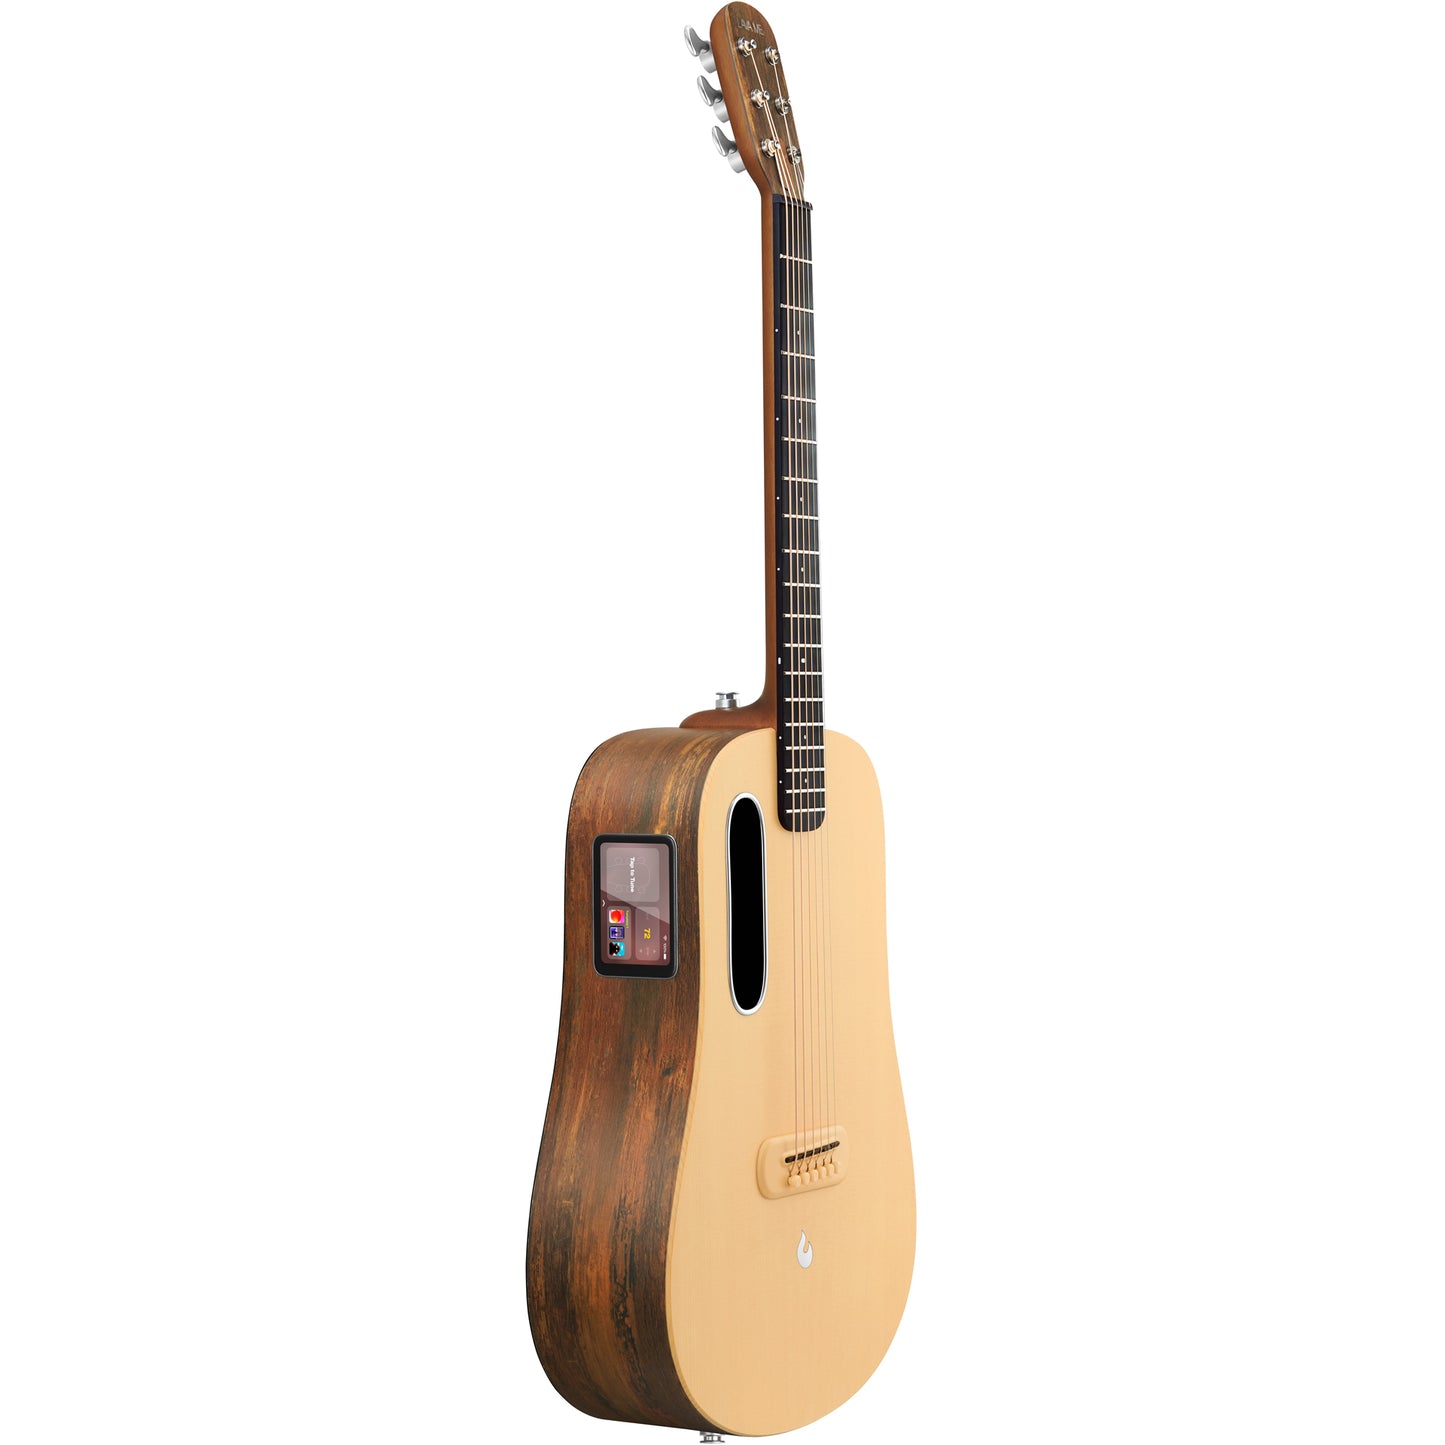 Lava Music ME 4 36” Spruce Series Guitar - Woodgrain Brown & Burlywood